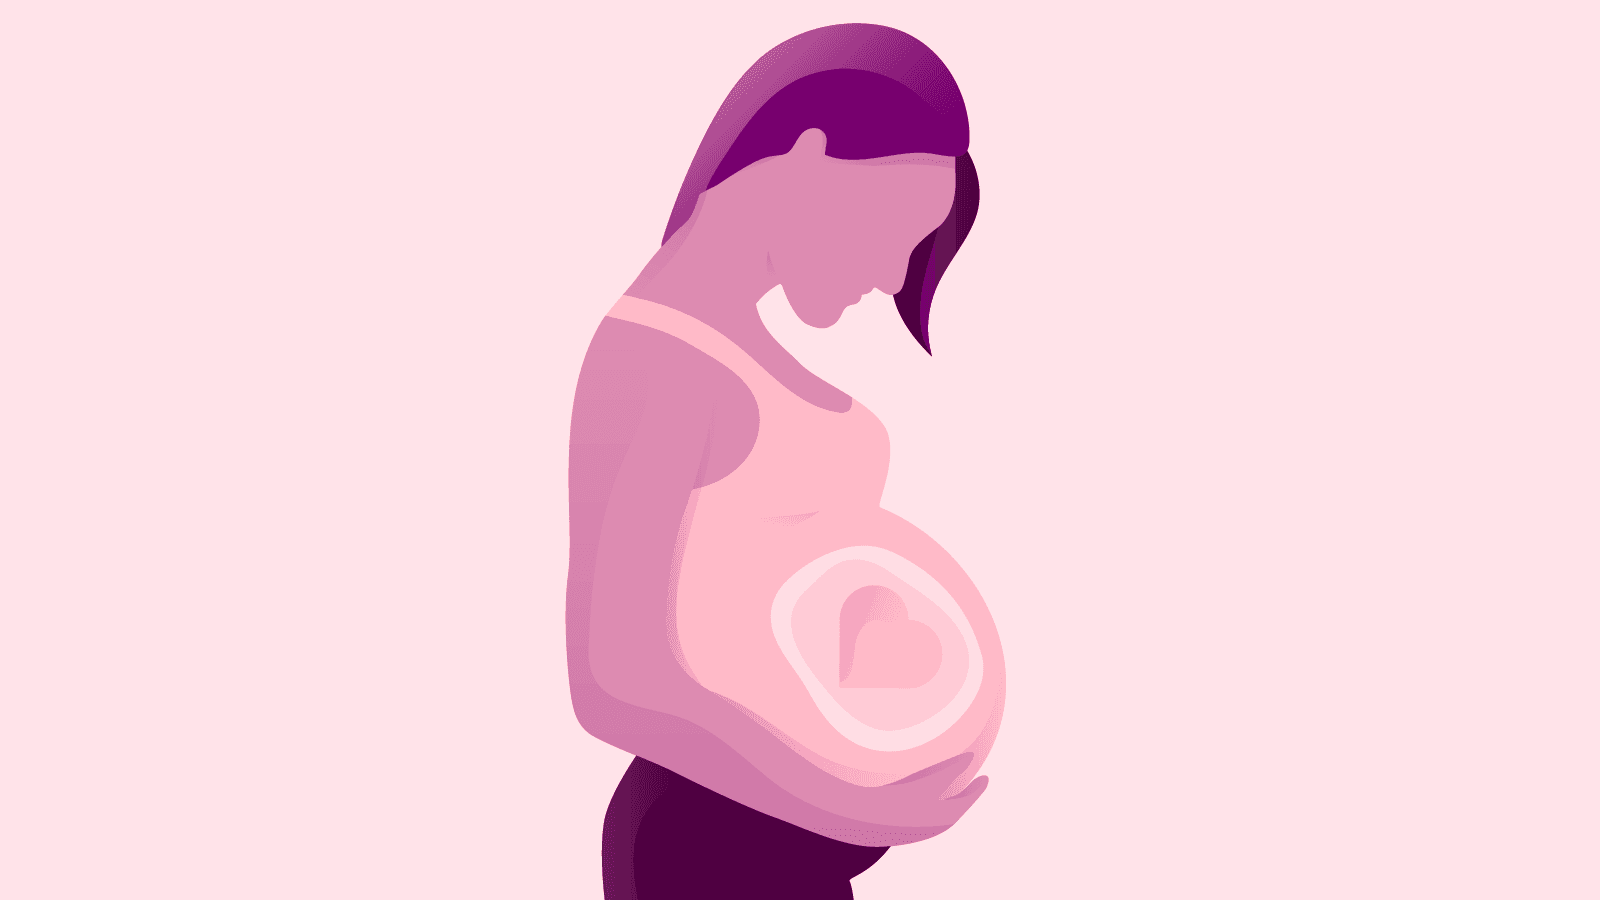 Αν είστε έγκυος, το τι πίνετε και τρώτε μπορεί να επηρεάσει επίσης και το παιδί σας. Παρατίθενται τα όσα θα πρέπει να γνωρίζετε σχετικά με την κατανάλωση αλκοόλ κατά την εγκυμοσύνη.